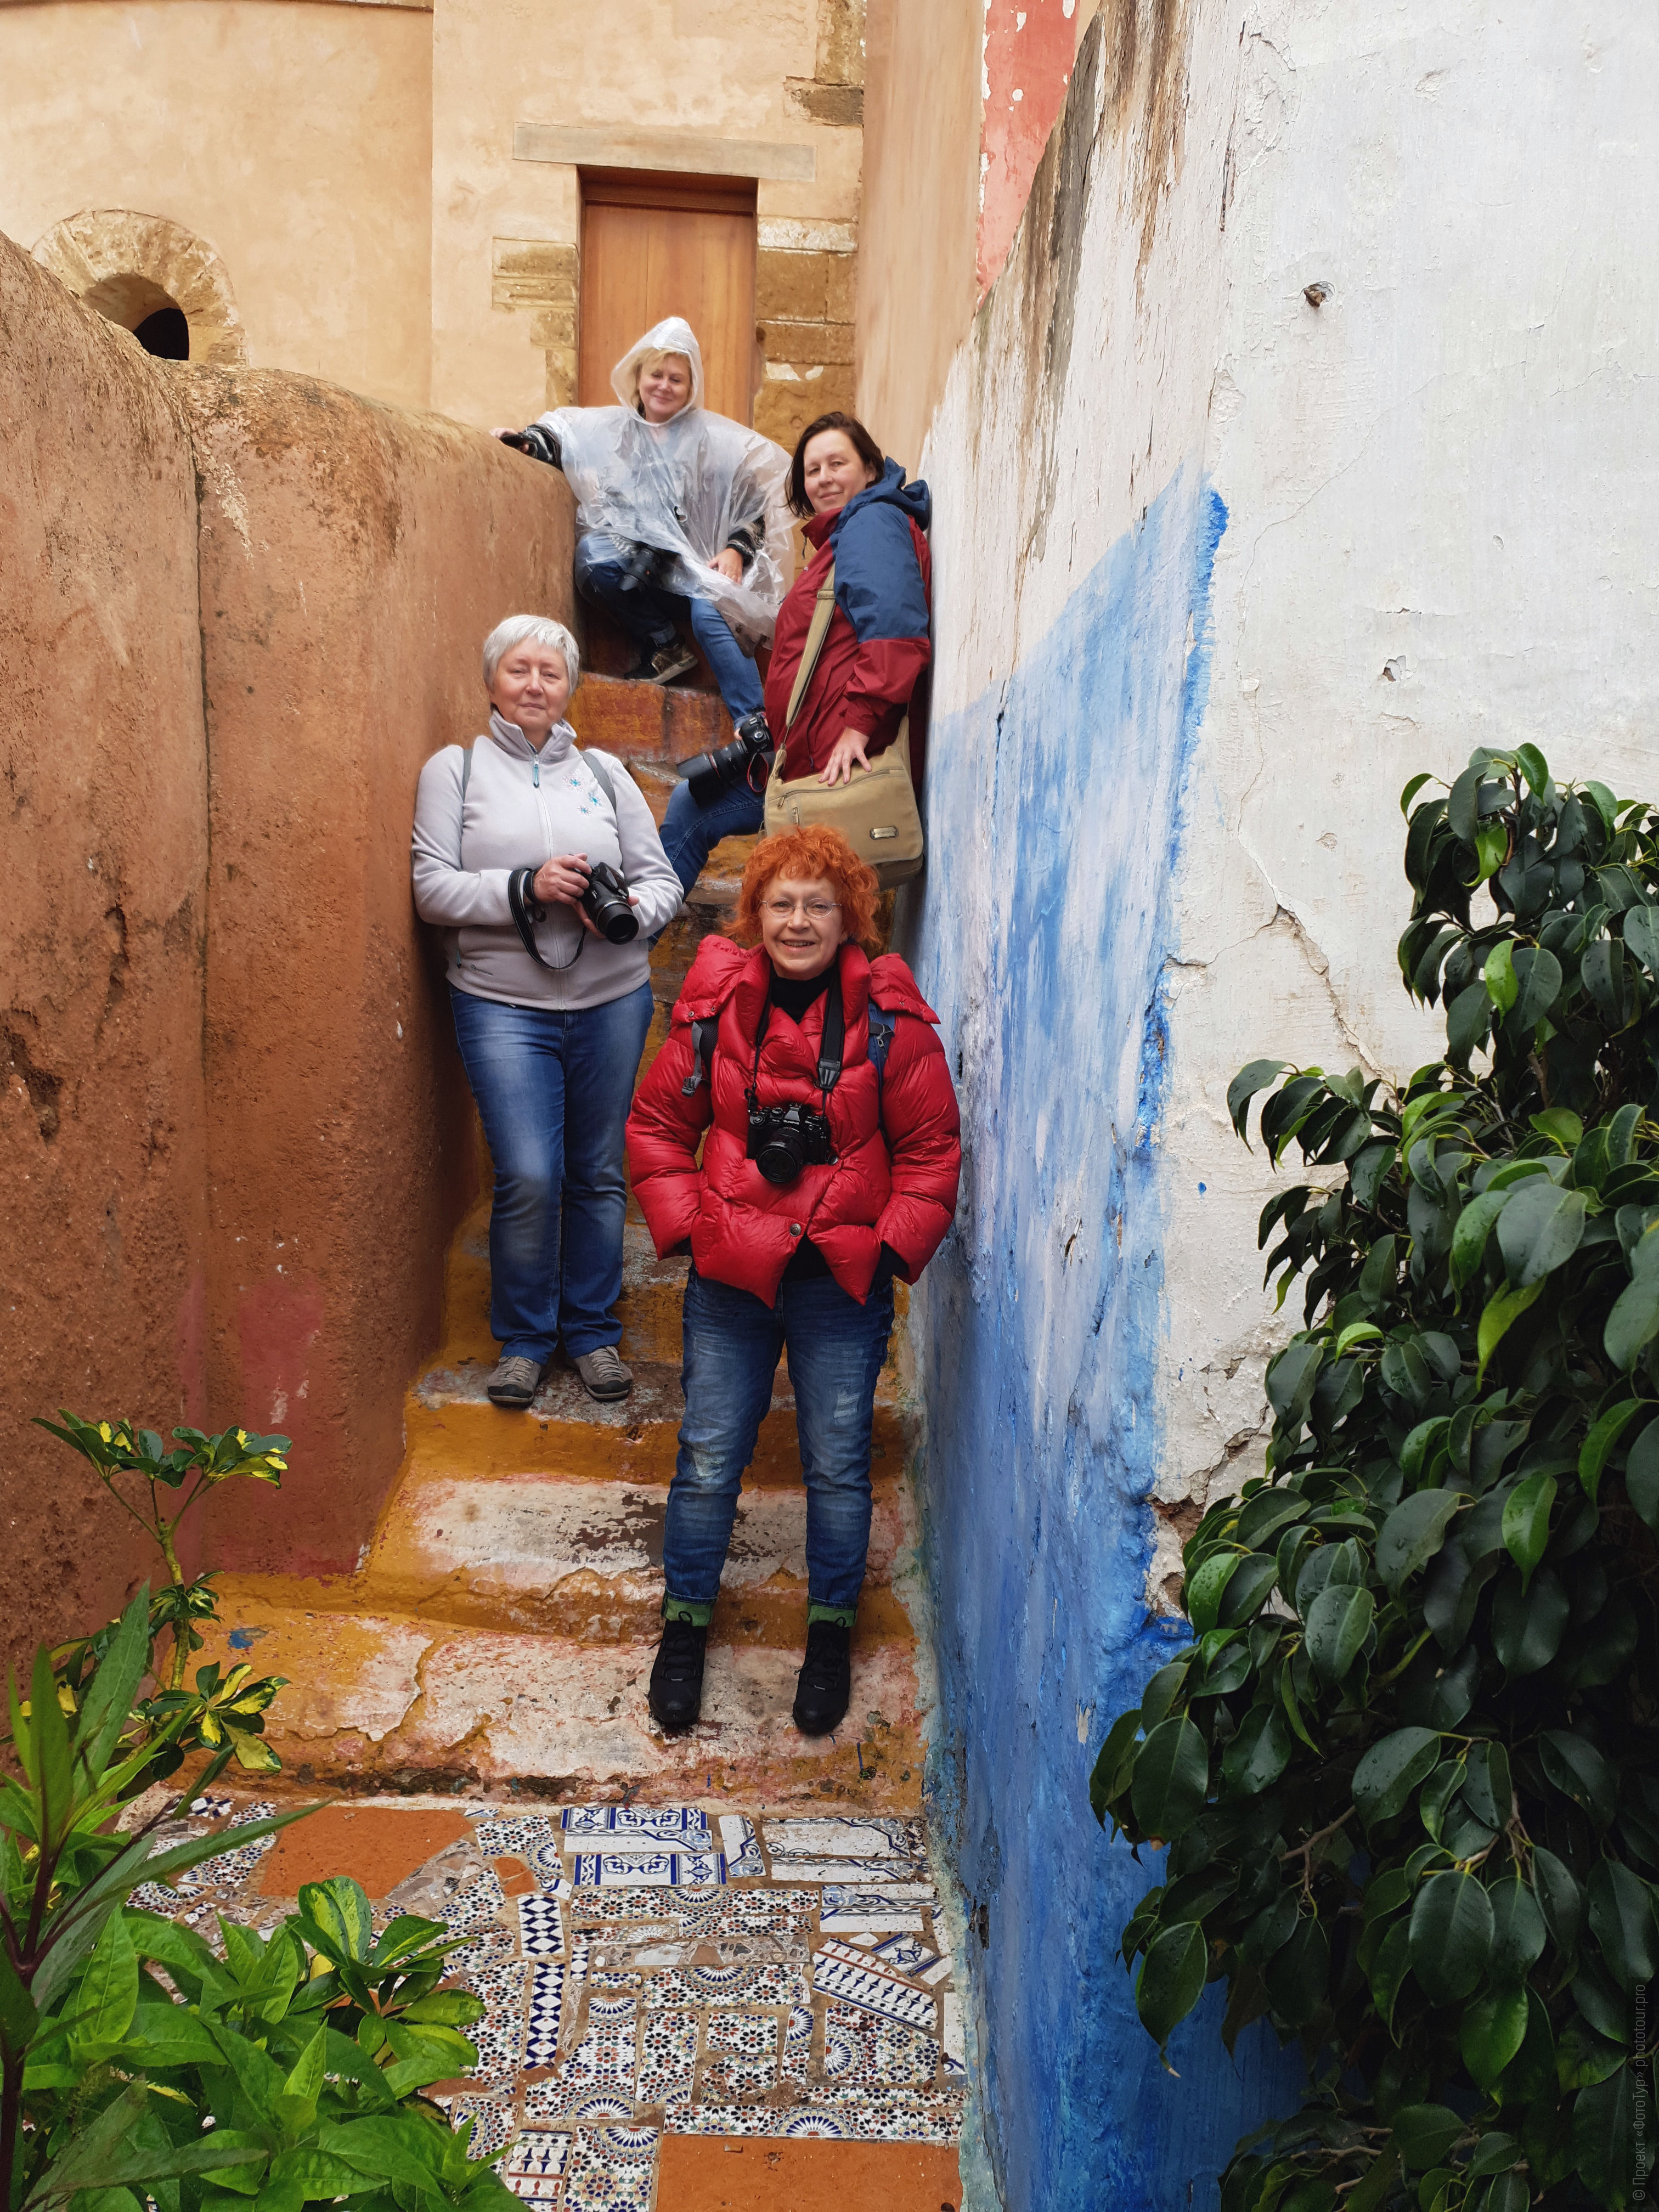 Наша первая лестница, фототур по Марокко, октябрь 2018 года.